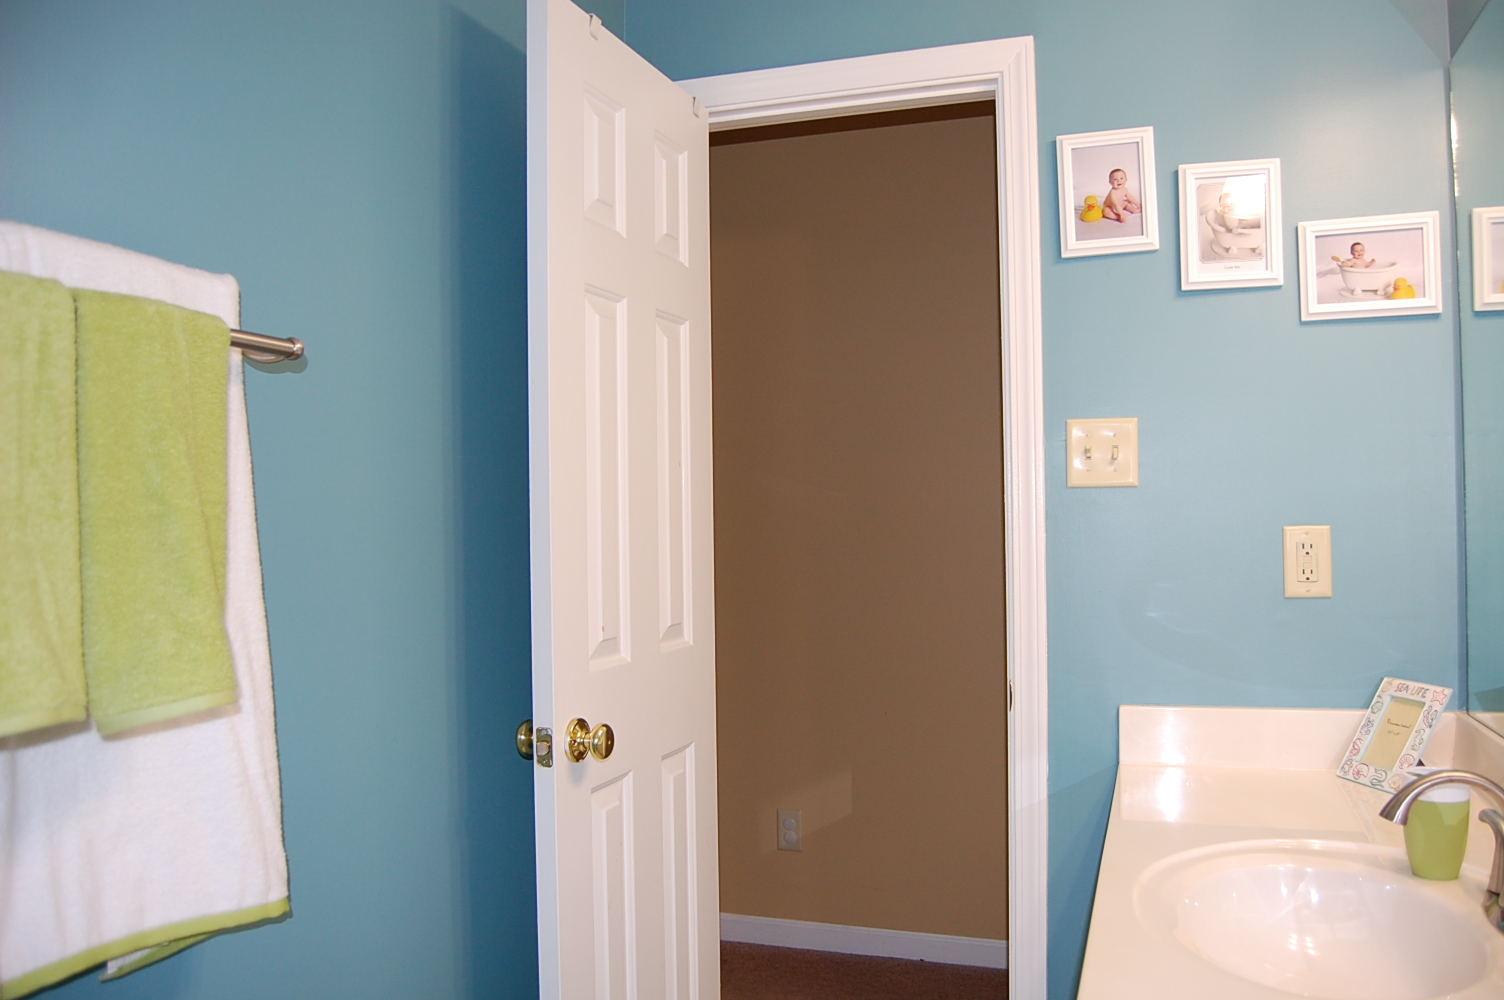 Закрывается дверь в ванной. Дверь в ванную. Интересная дверь в ванную комнату. Открытая дверь в ванную. Двери в ванную комнату и туалет.